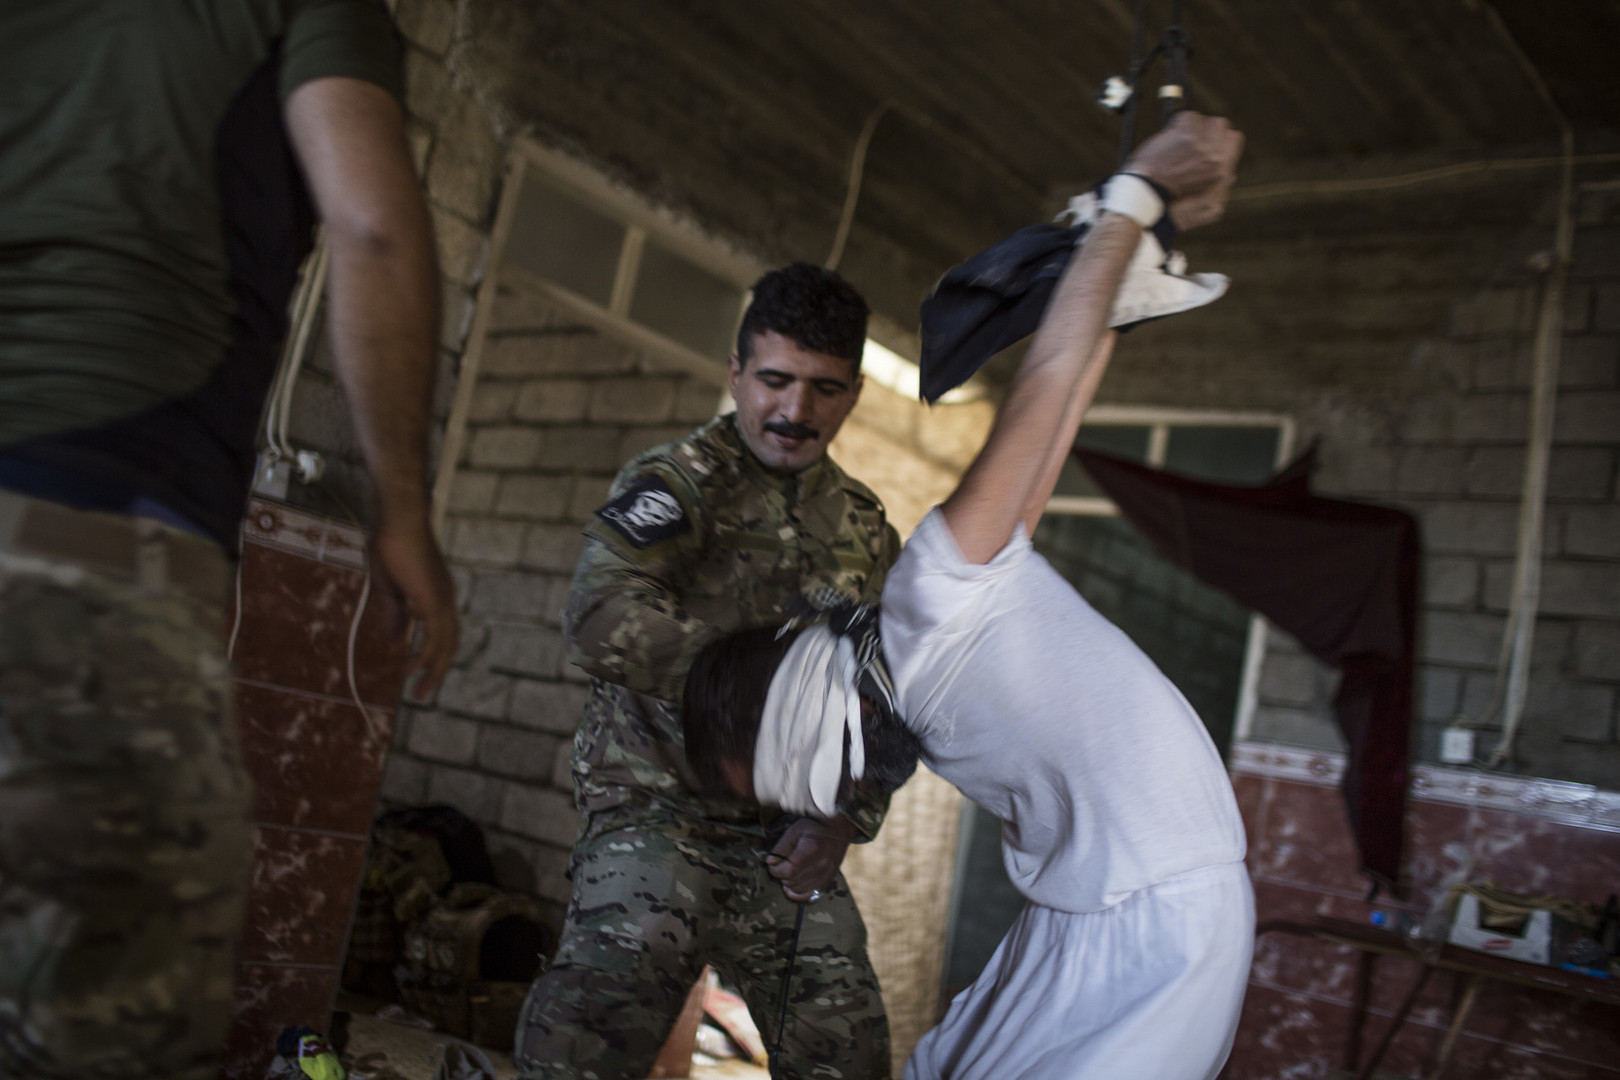 A Mossoul, des soldats irakiens emploient la torture contre des prisonniers (IMAGES CHOQUANTES)